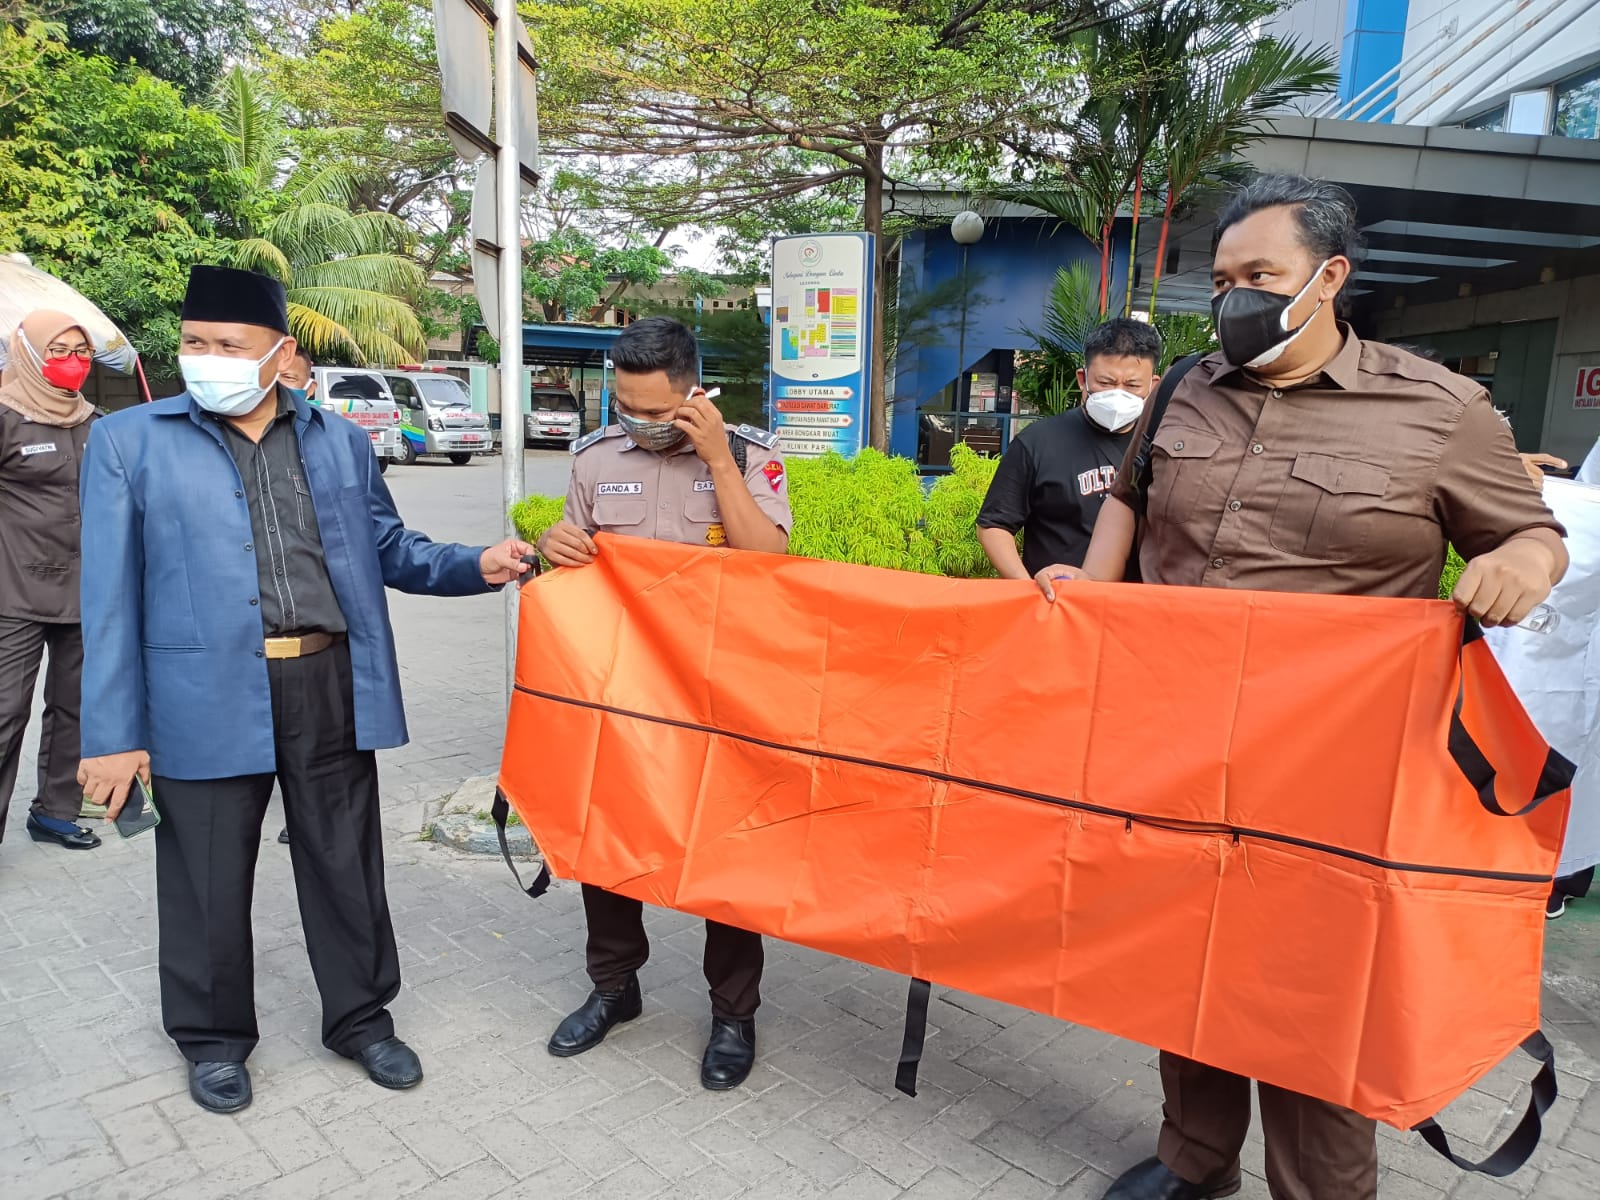 Ketua DPRD Kota Tangerang Gatot Wibowo saat menyerahkan sebuah kantong jenazah diterima Direktur RSUD Kota Tangerang dr Dini Anggraeni sebagai simbol, Kota Tangerang, Jumat 16 Juli 2021.